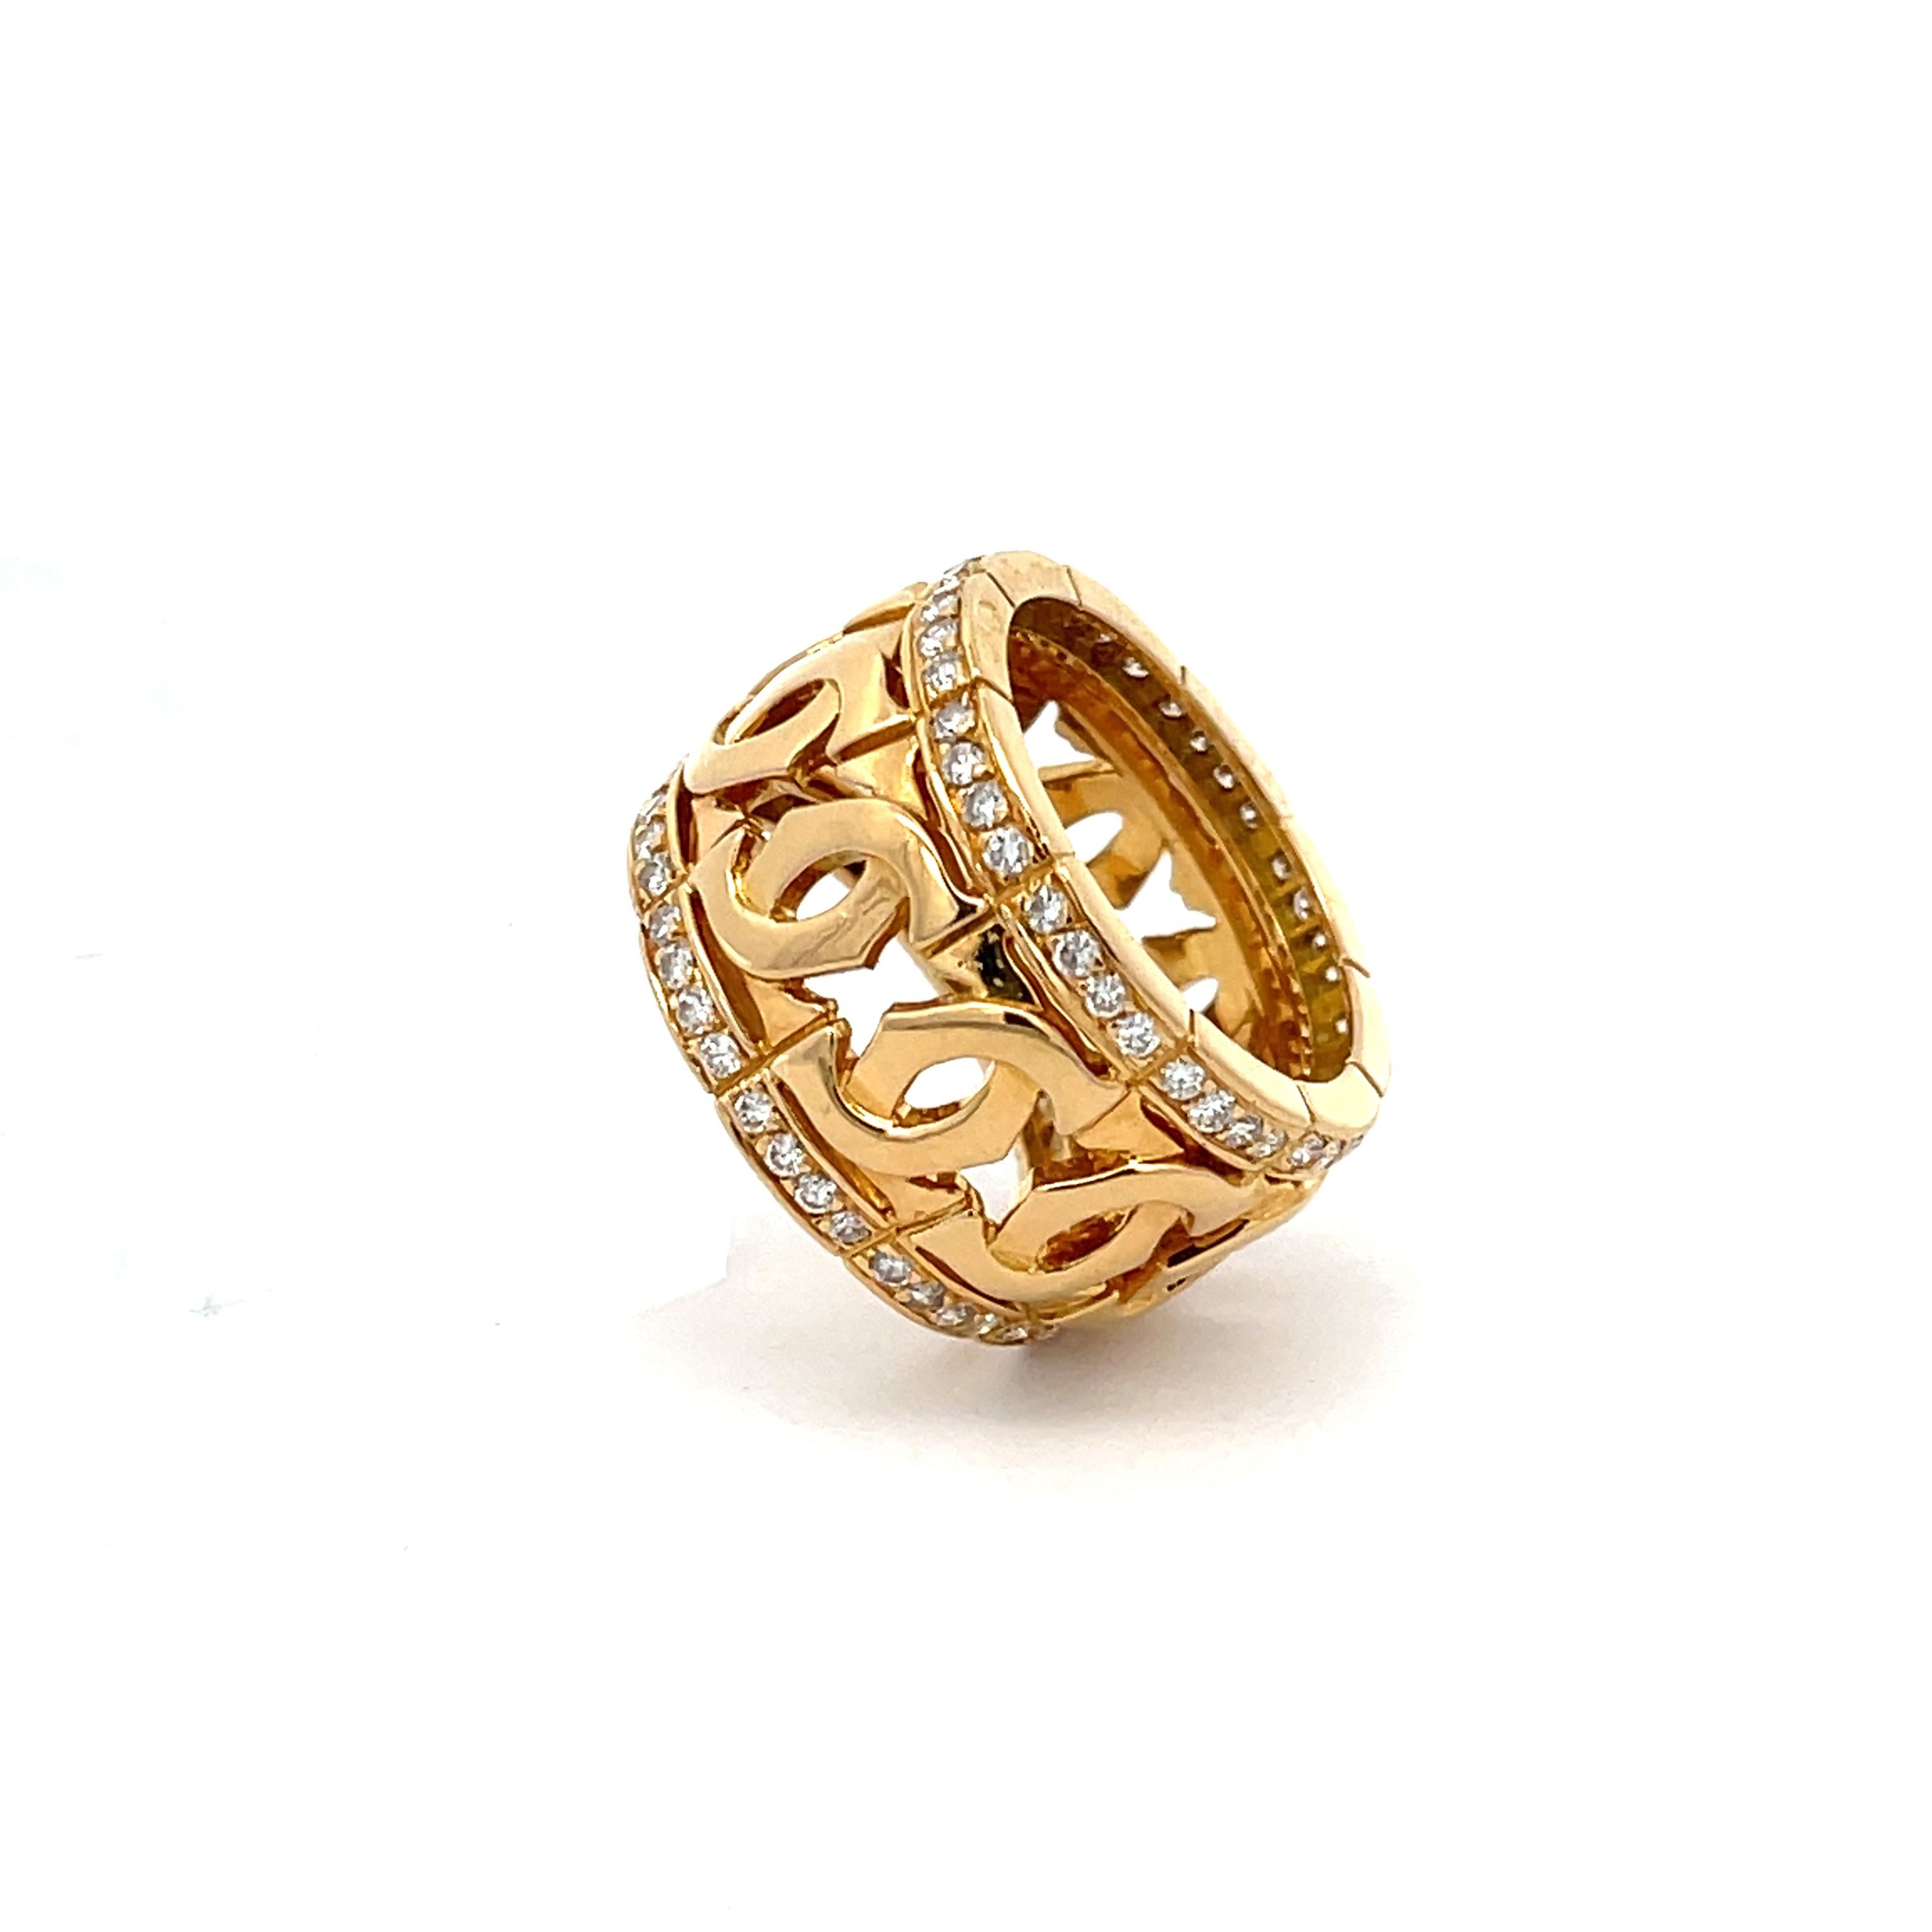 Estate Cartier Signature C Diamond Ring in 18K Gelbgold. Der Ring enthält 80 runde Brillanten mit einem Gewicht von etwa 1,20ctw. Der Ring ist 13 mm breit, hat Ringgröße 5 1/2 und wiegt 11,8 Gramm.